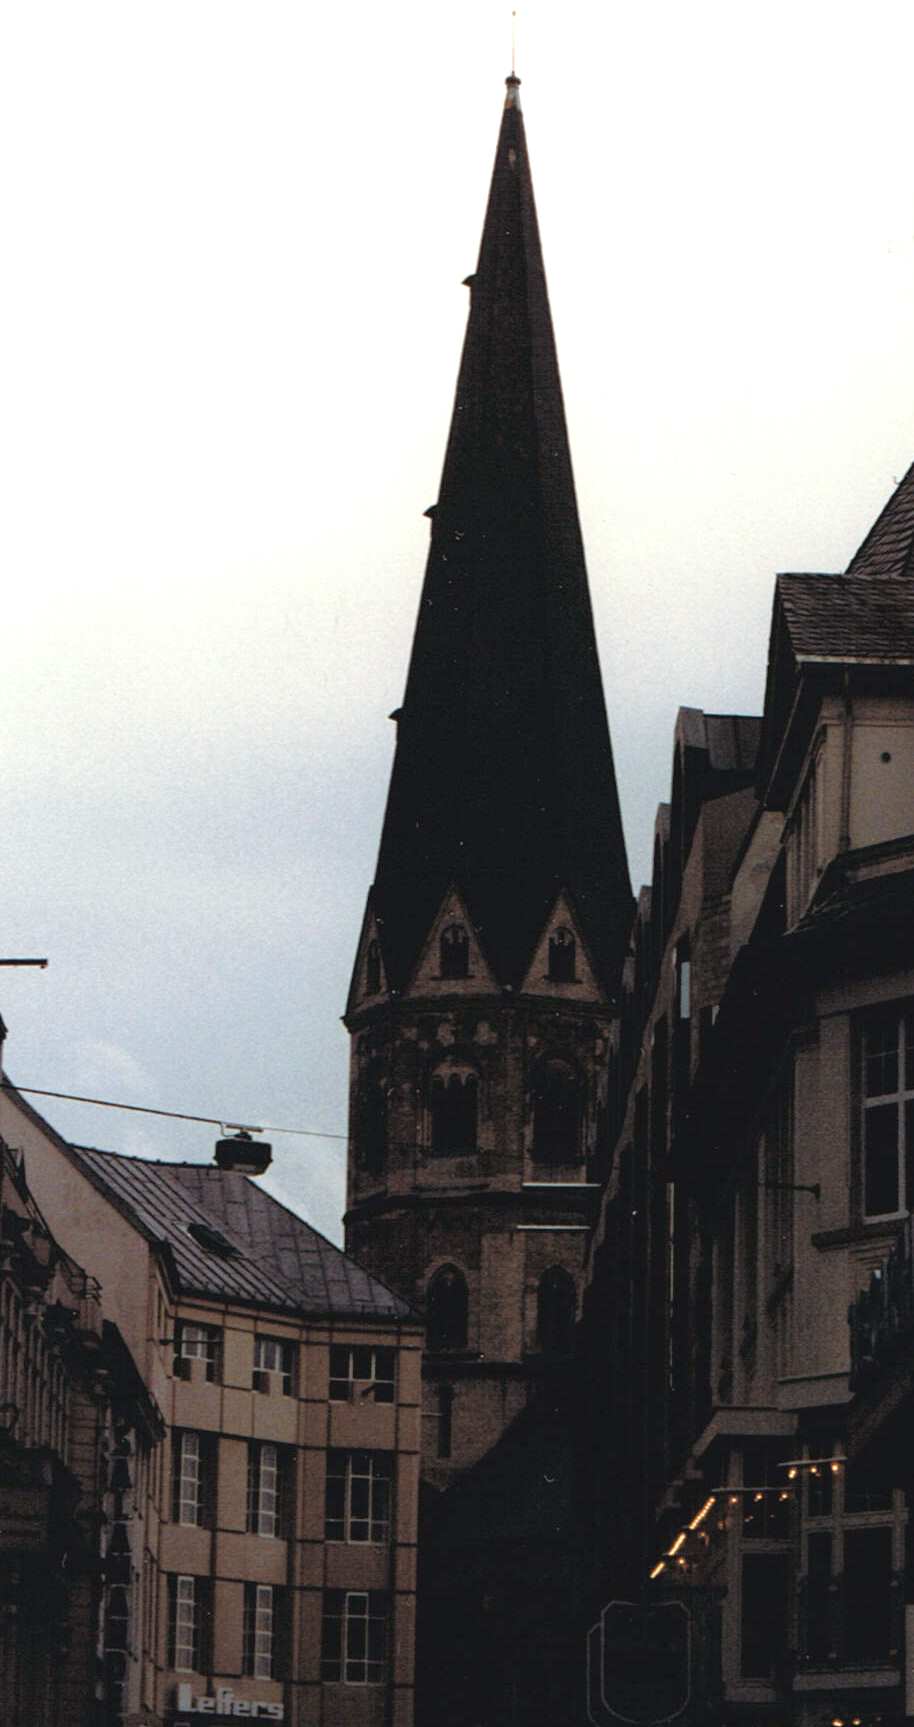 Central Spire of Bonn Basilica at Dusk